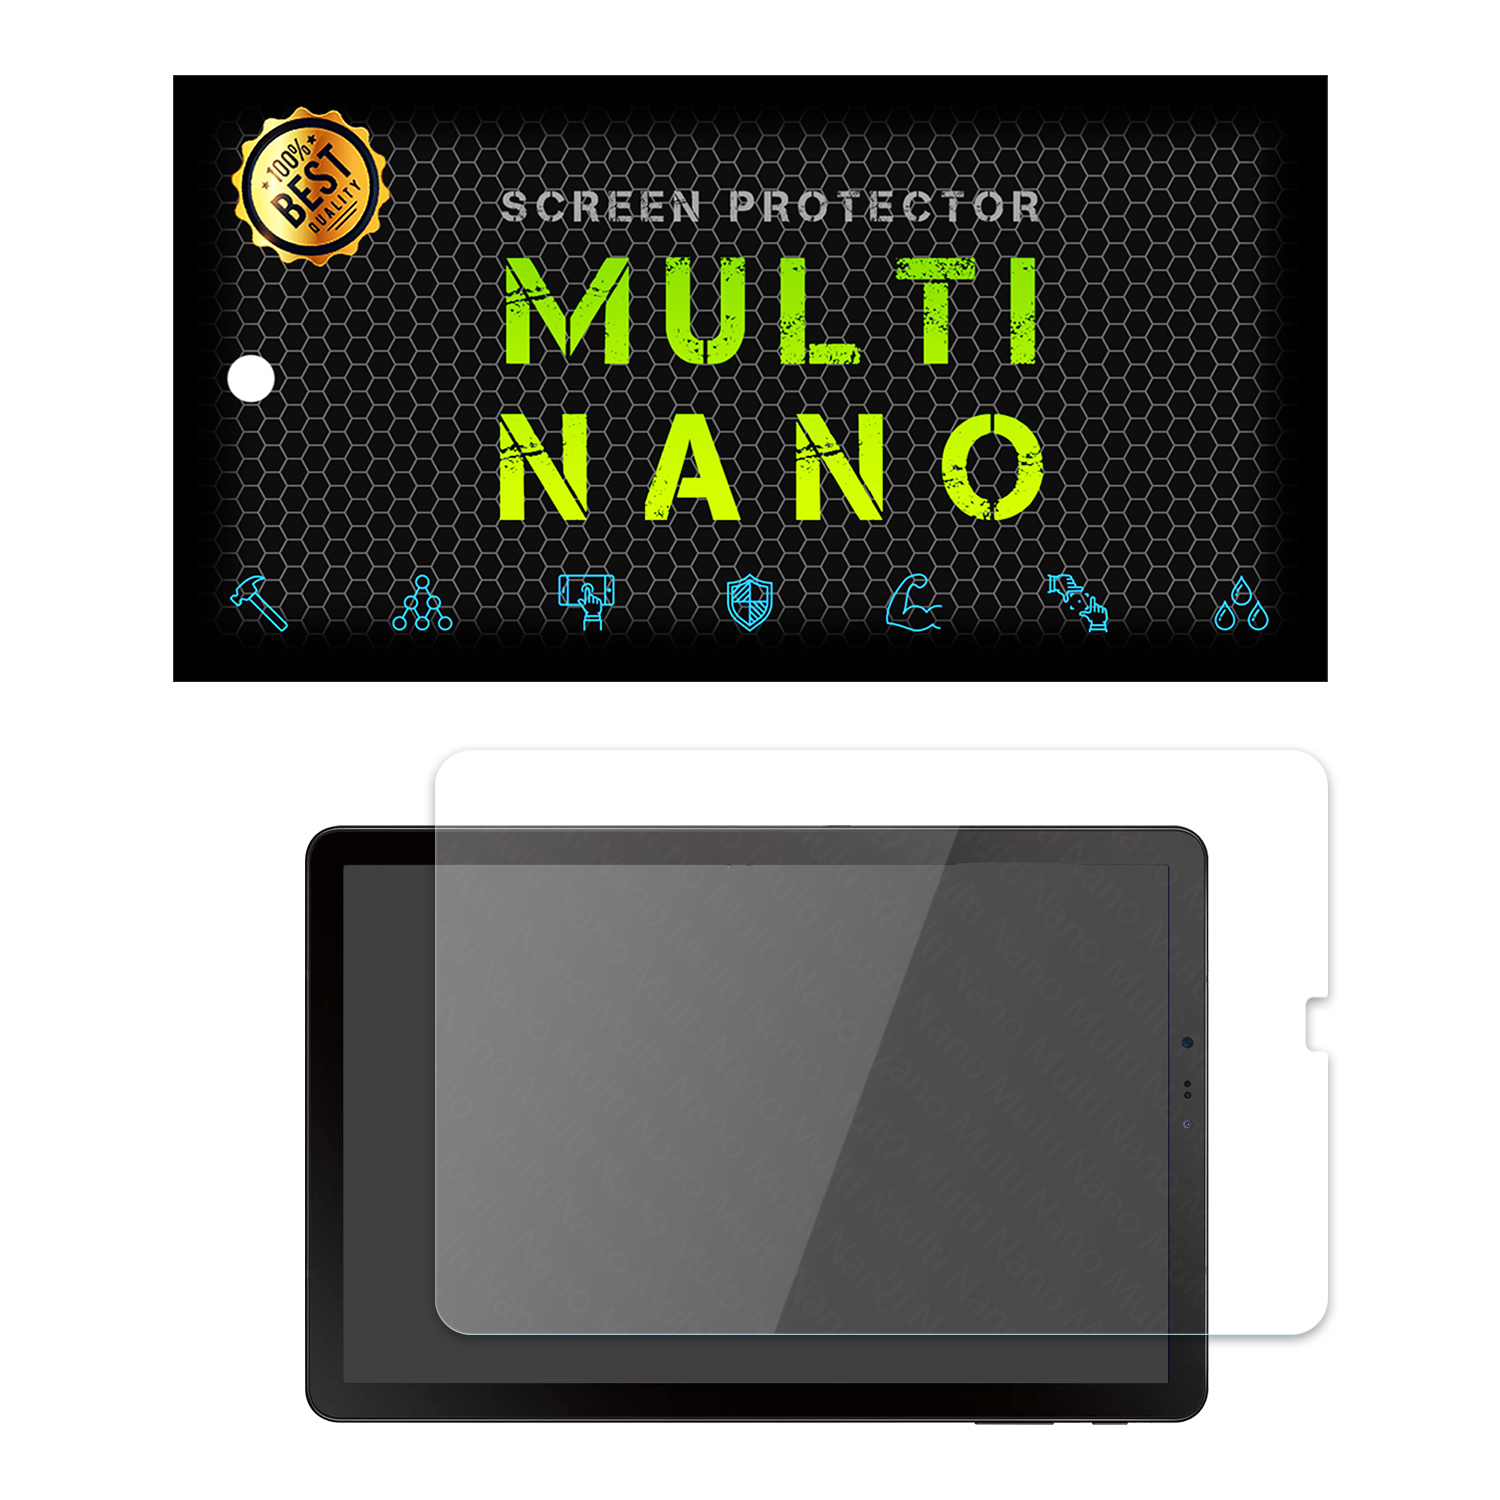 محافظ صفحه نمایش مولتی نانو مدل Pro مناسب برای تبلت سامسونگ Galaxy Tab S4 10.5 / T830 / T835